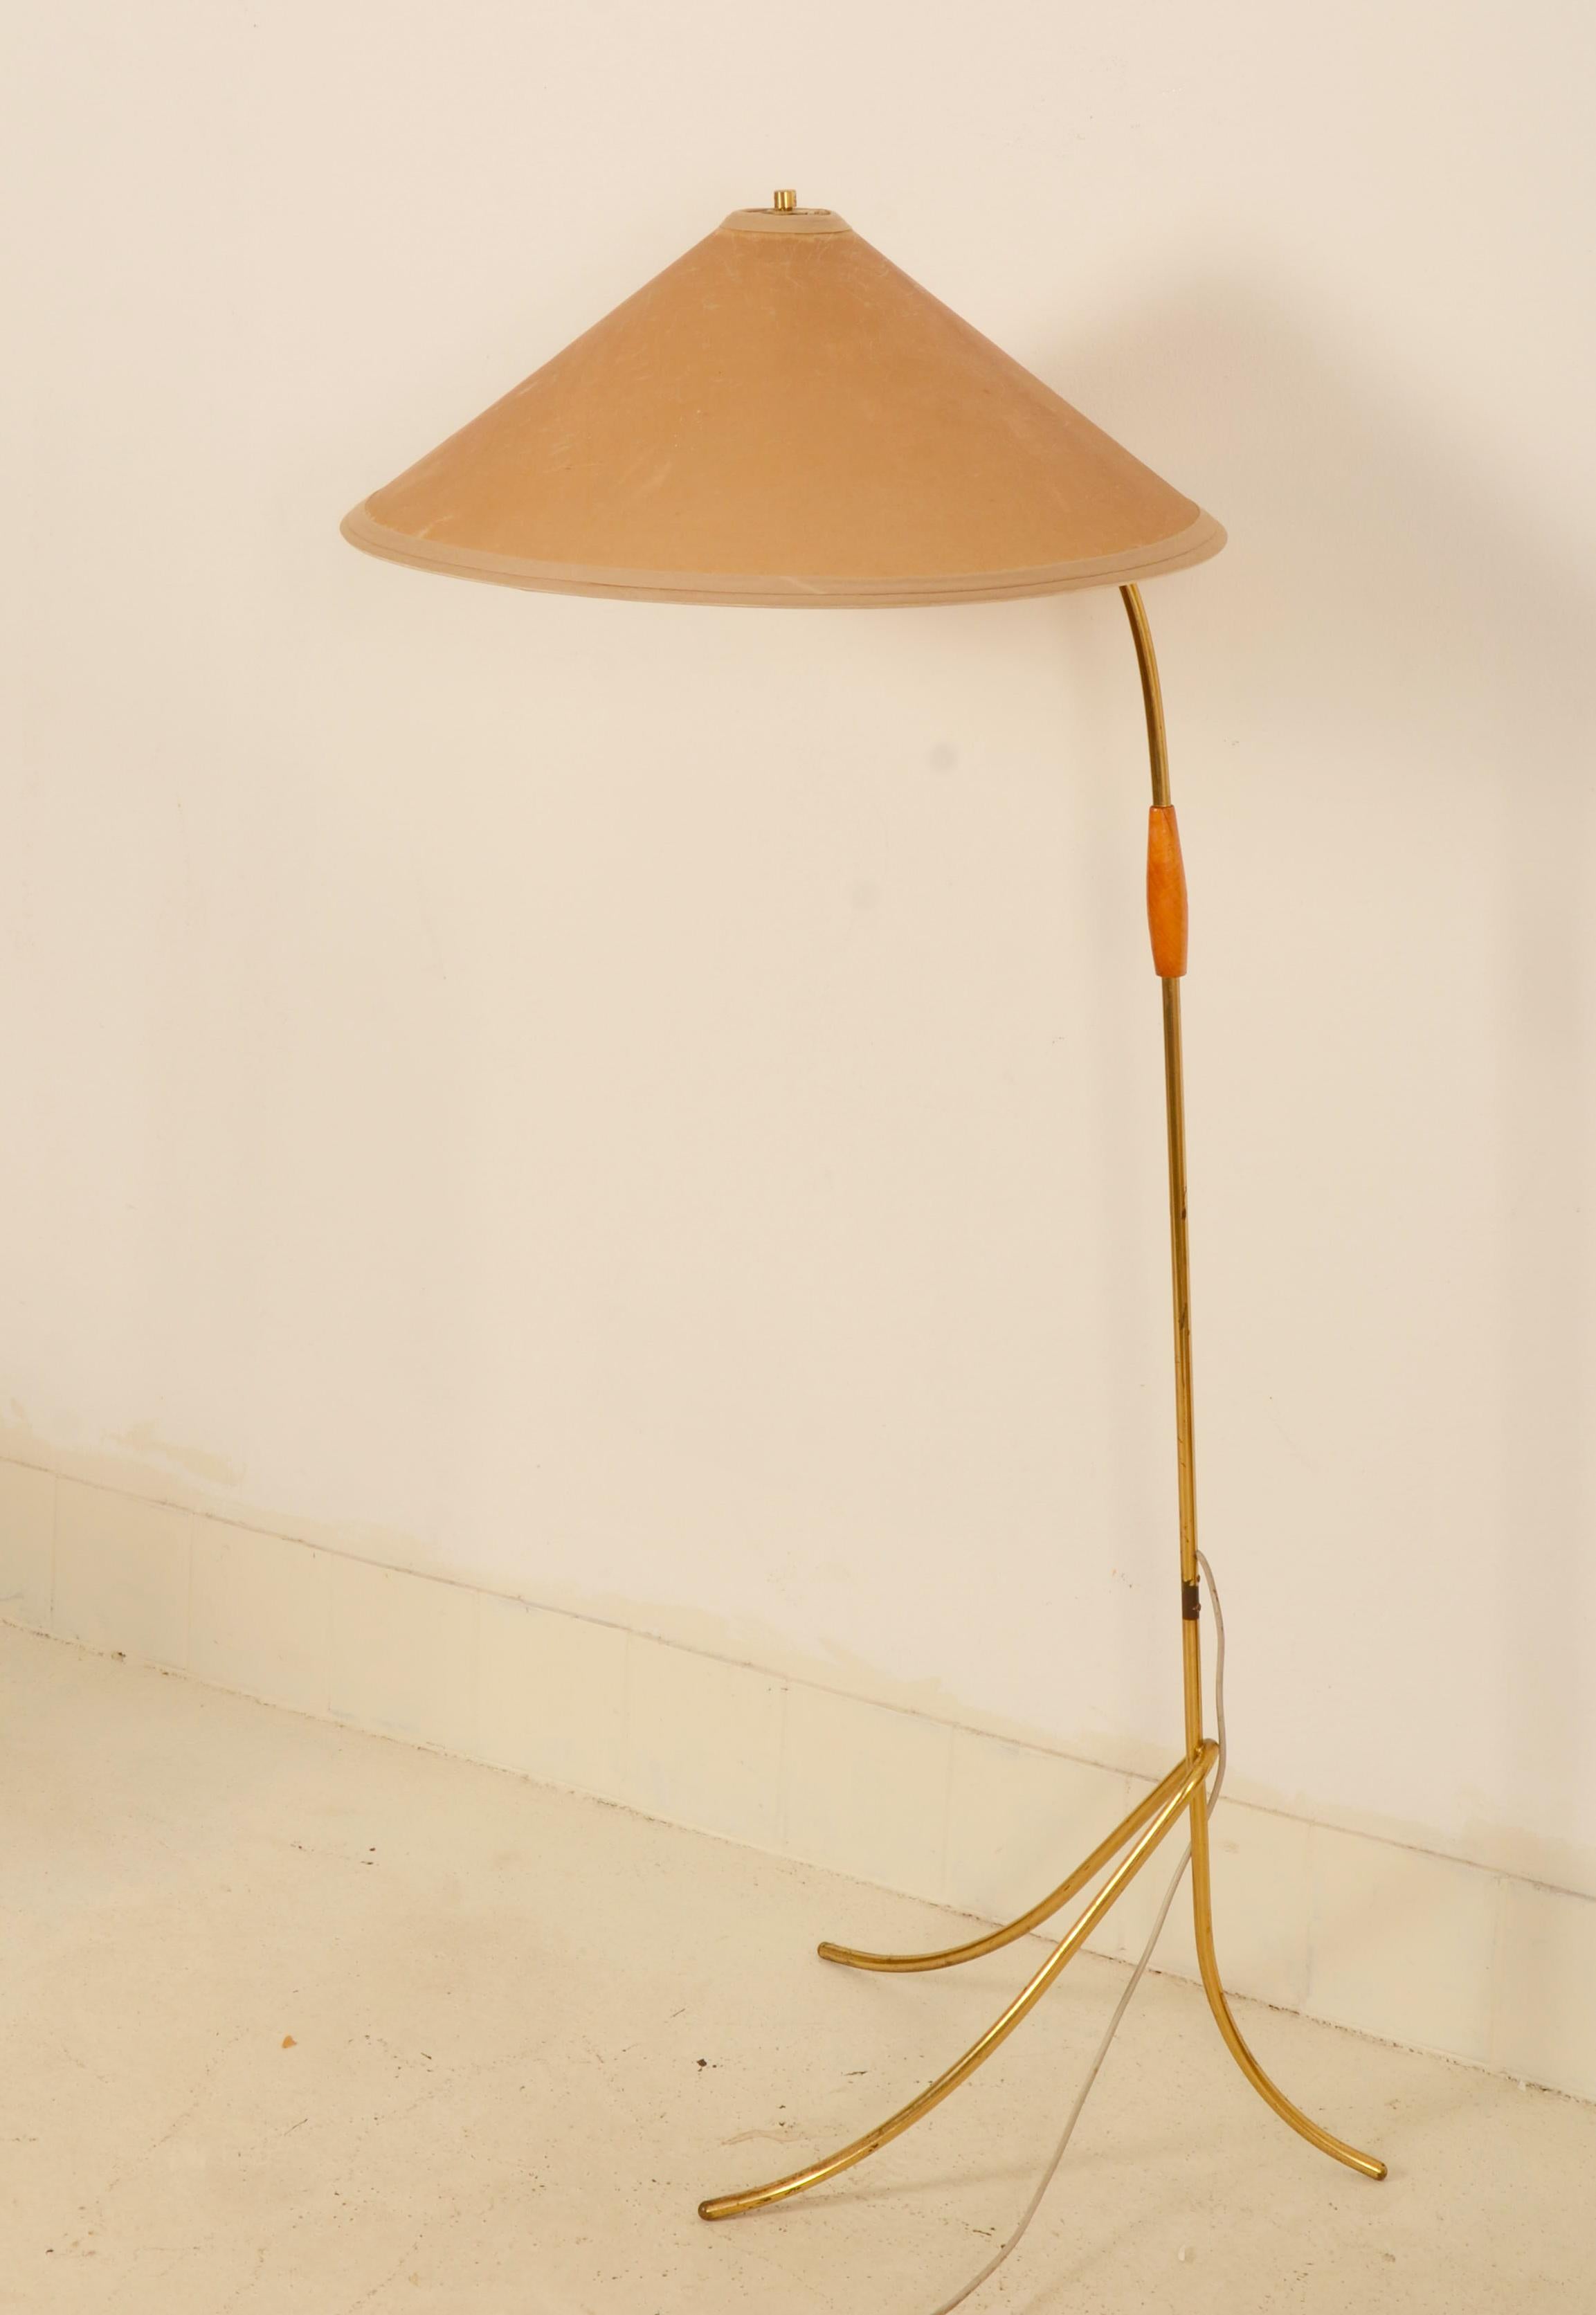 Stativkonstruktion aus Messing mit einer E27-Fassung mit Schalter, originaler kegelförmiger Lampenschirm aus Pergament, hell. Entworfen und hergestellt von Rupert Nikoll in Wien in den 1950er Jahren. Alters- und Gebrauchsspuren, leichte